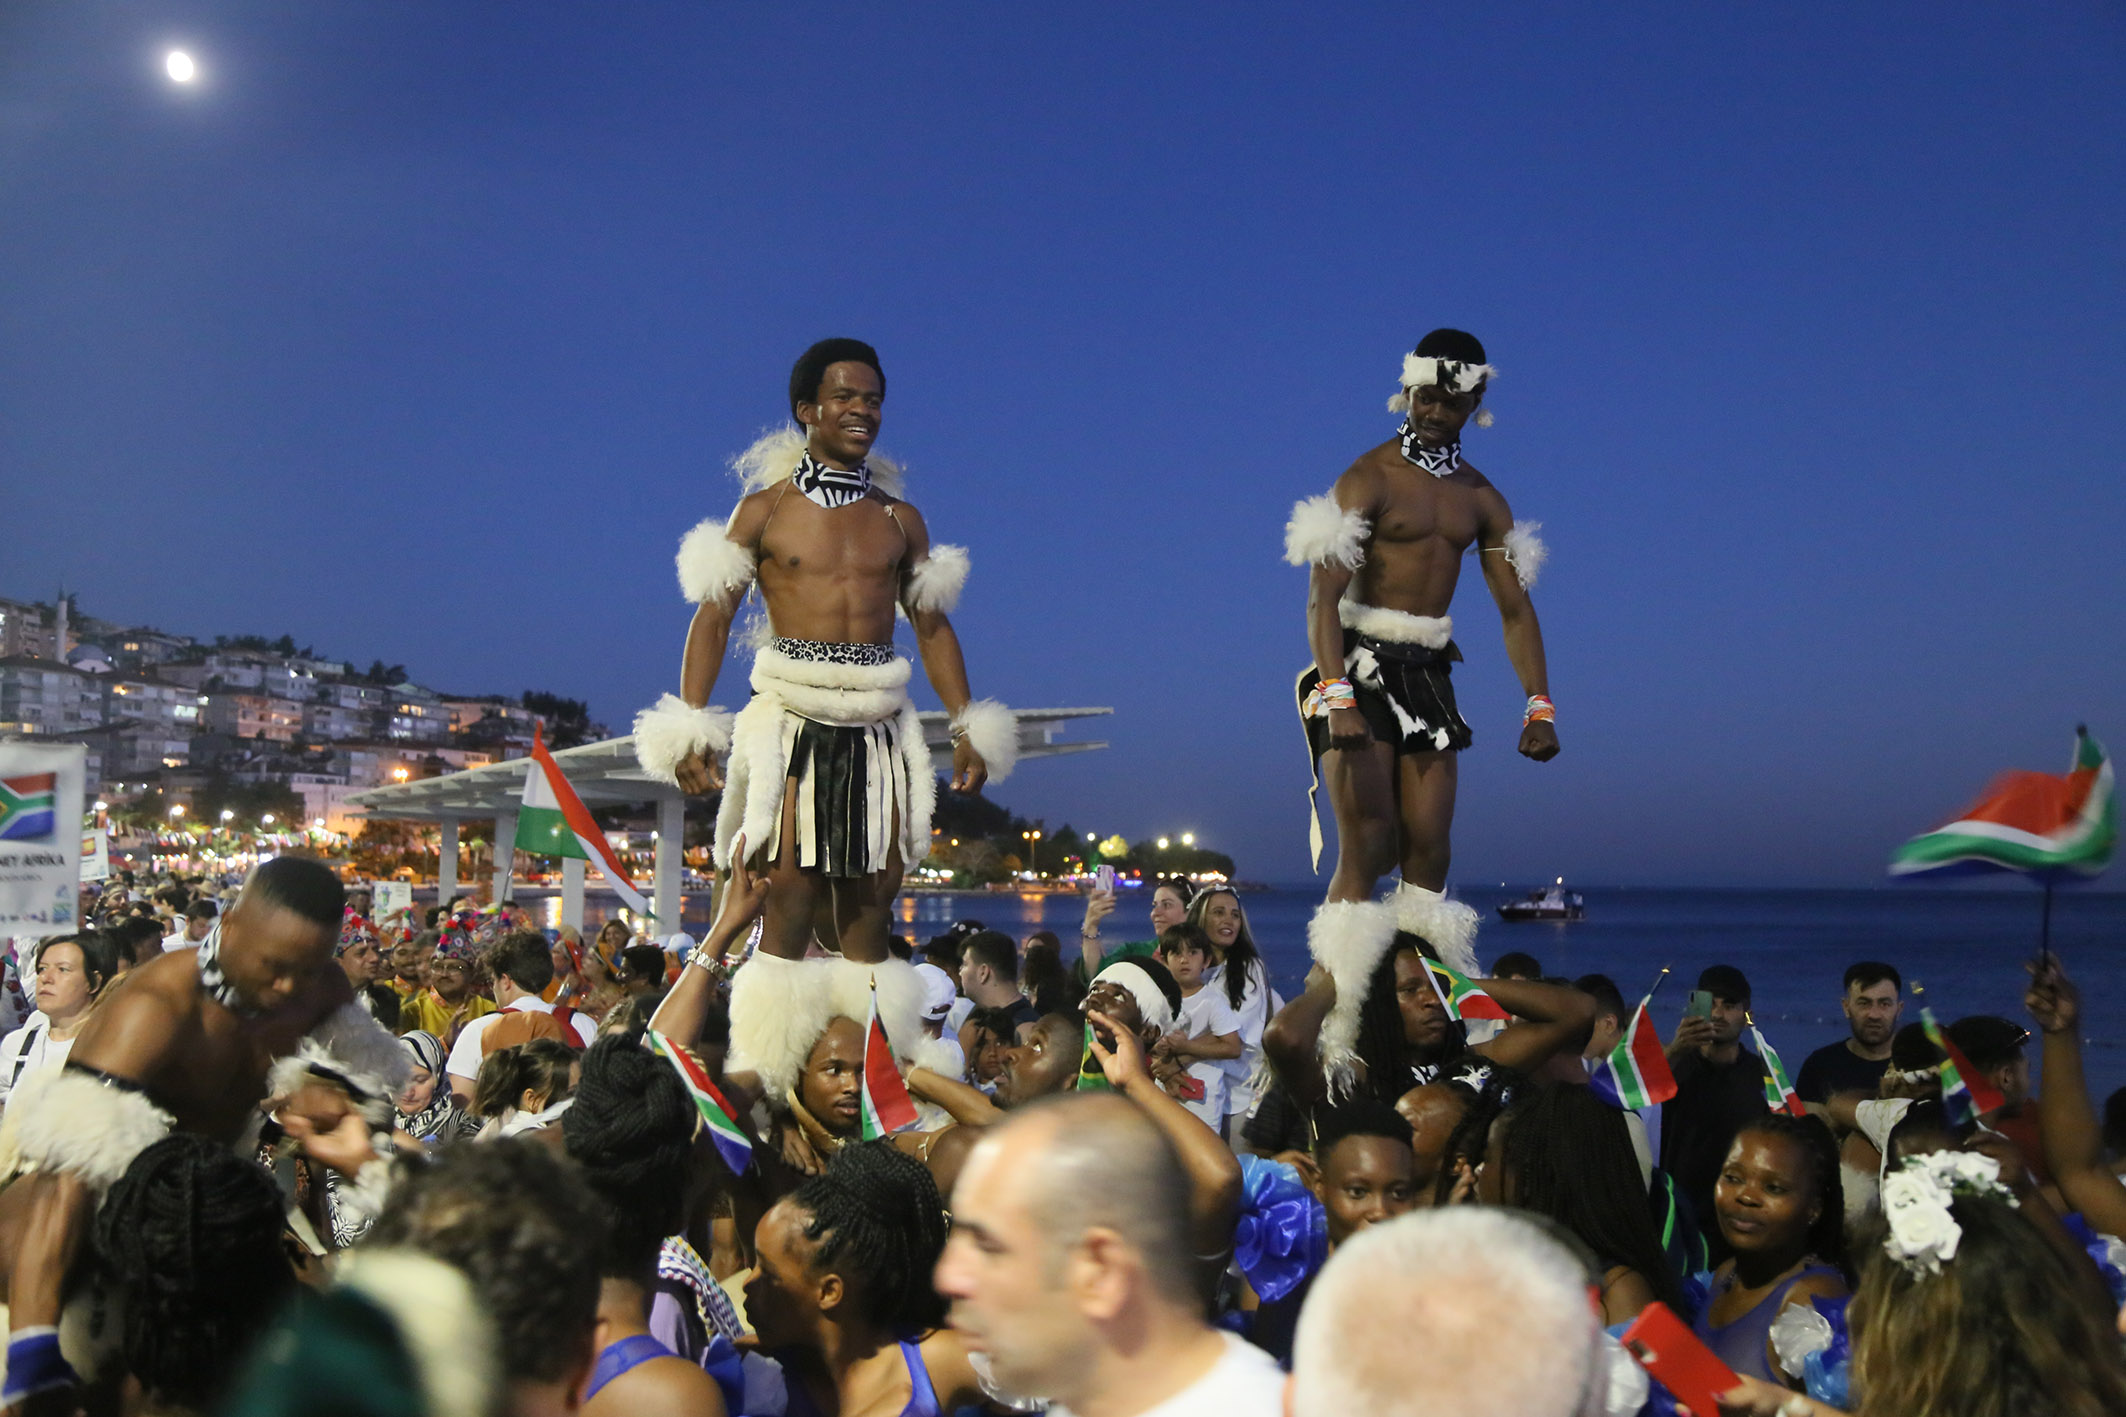 100 ülkenin katıldığı festivalin görüntüleri Rio Karnavalını aratmadı